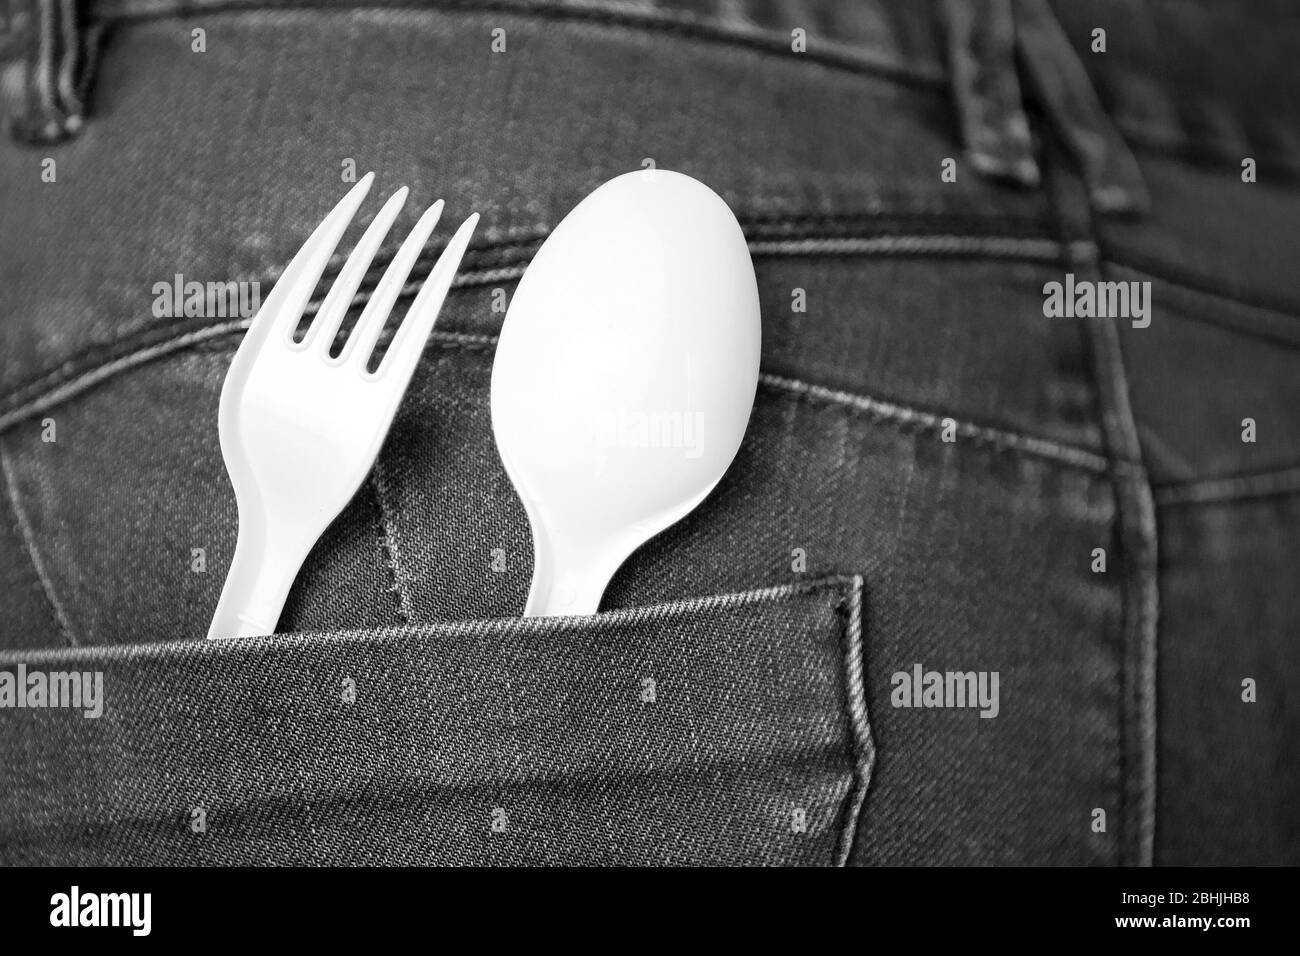 Scopri il concetto di cibo con i jeans denim blu con forchetta bianca e cucchiaio in tasca. Cucchiaio e forchetta in plastica riutilizzabili in tasca. Ambiente sicuro Foto Stock